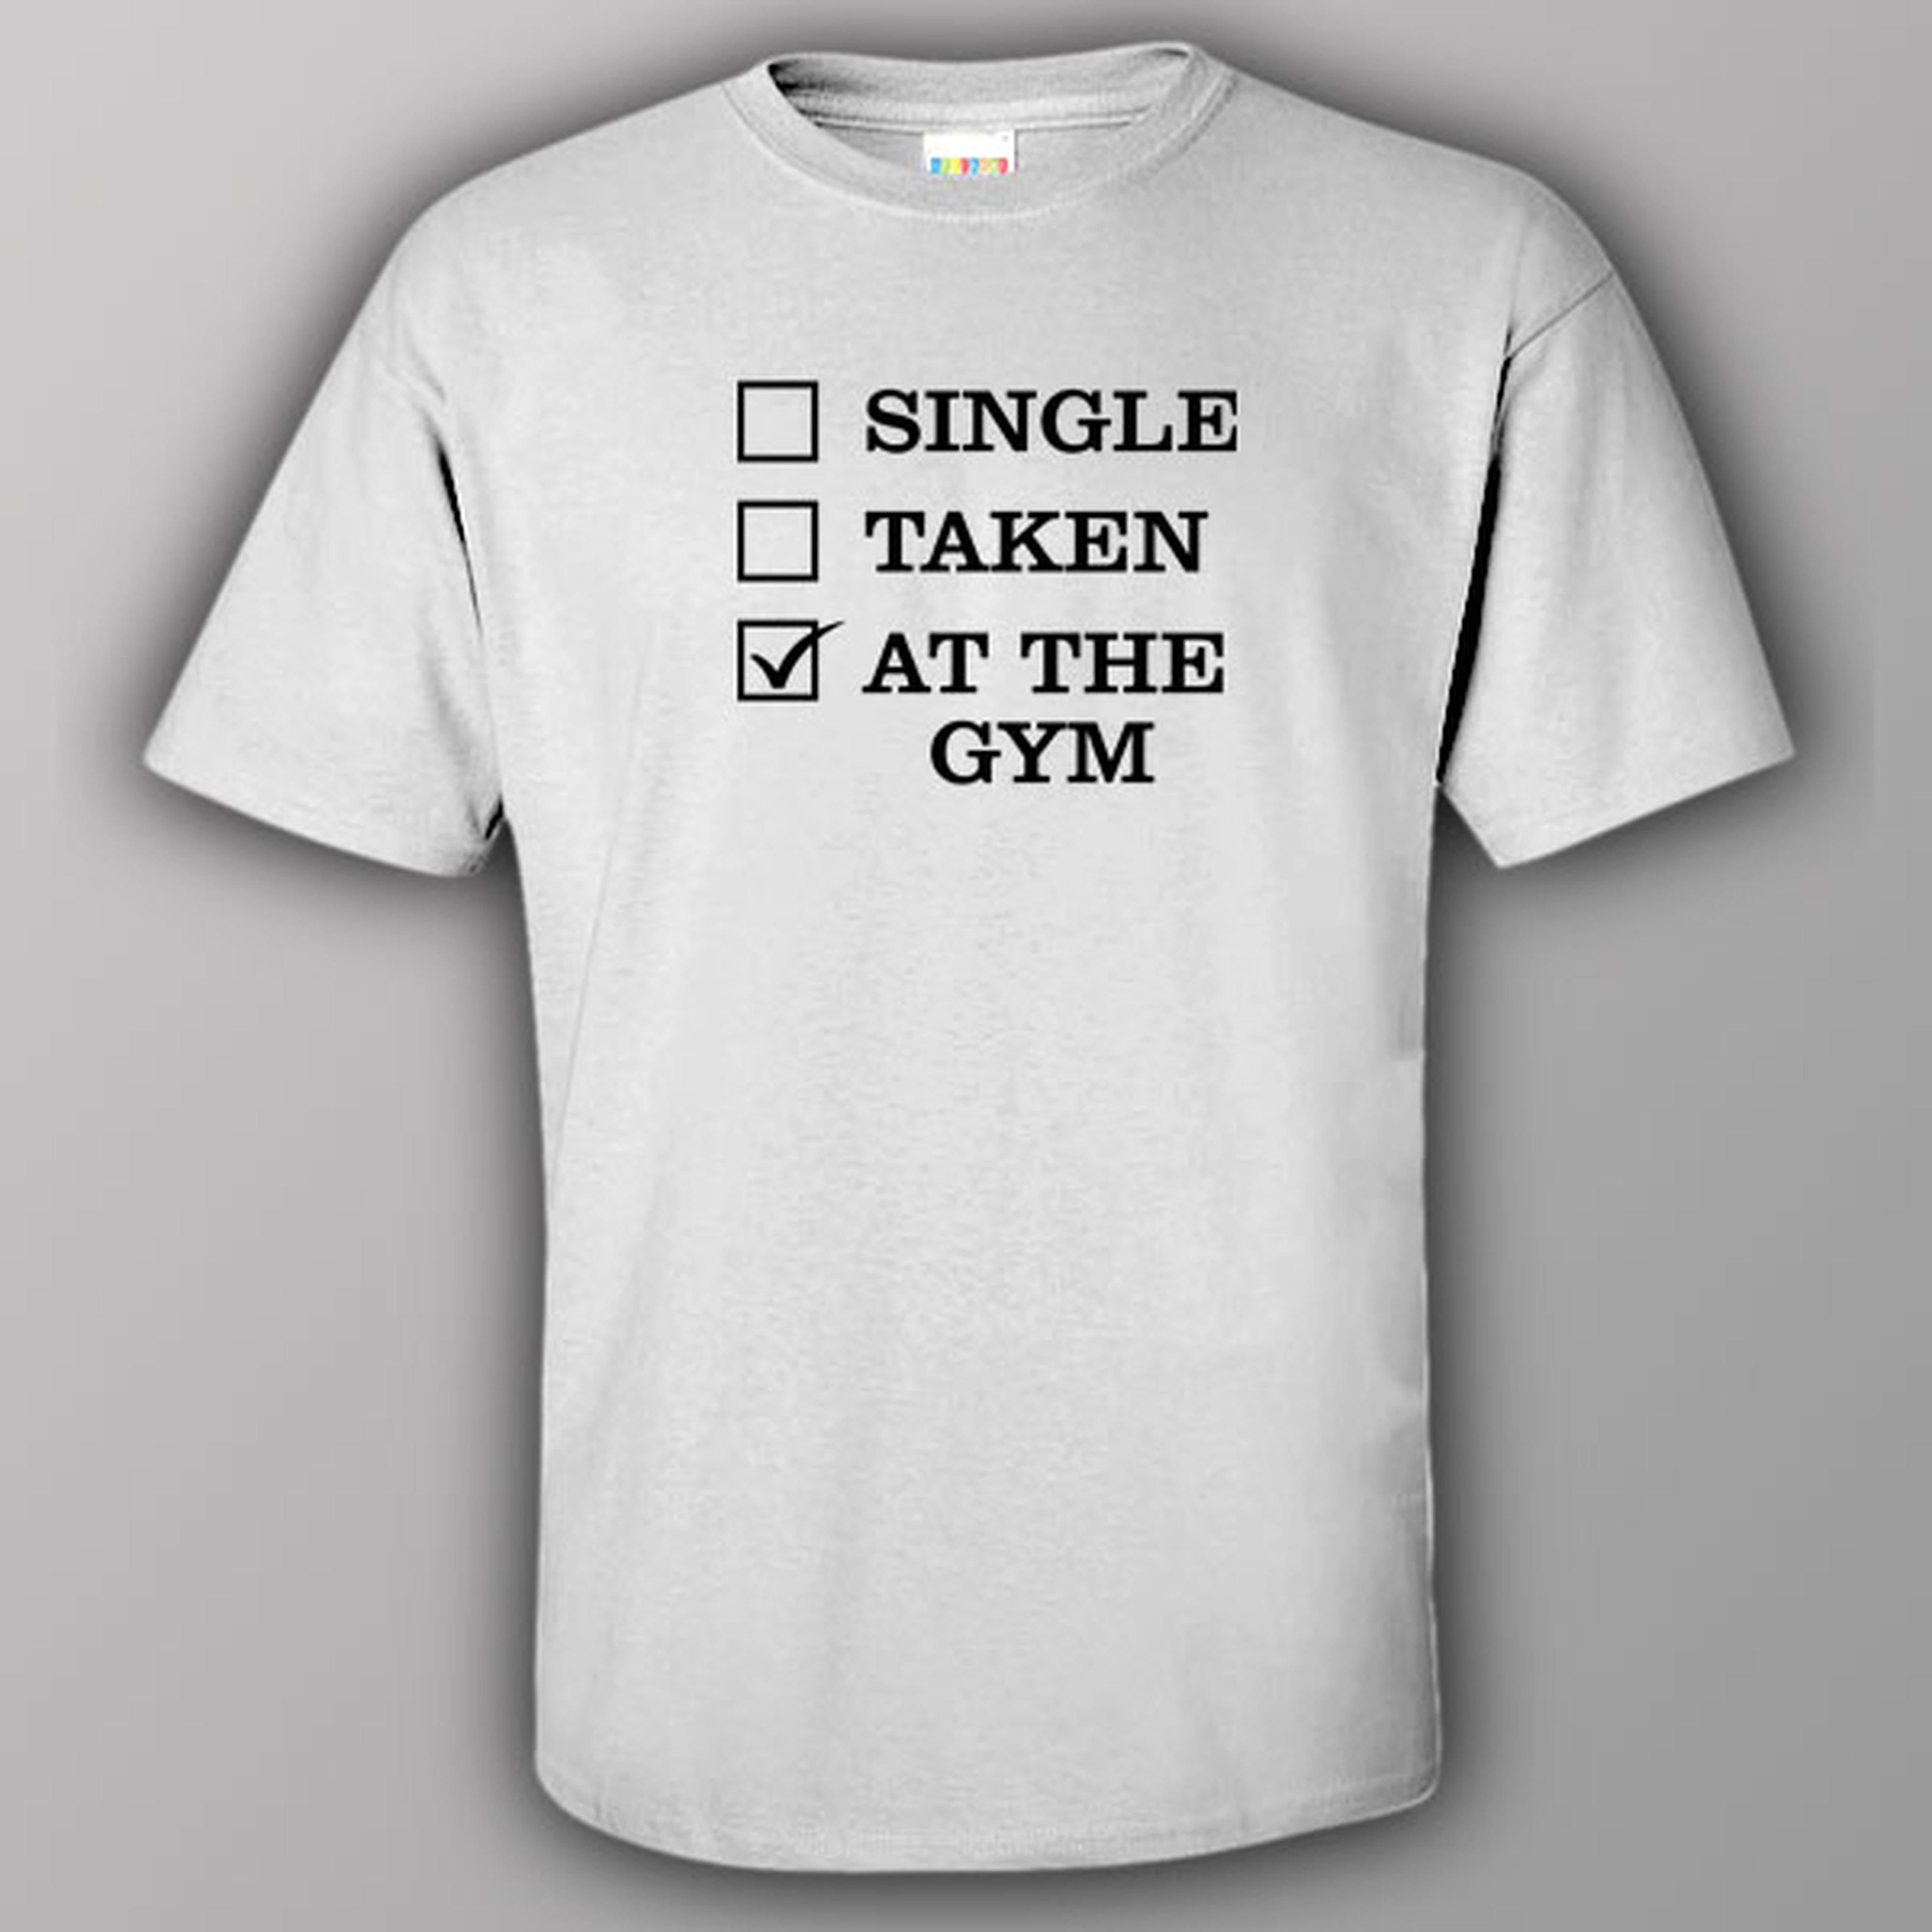 Single - Taken - At the gym - T-shirt